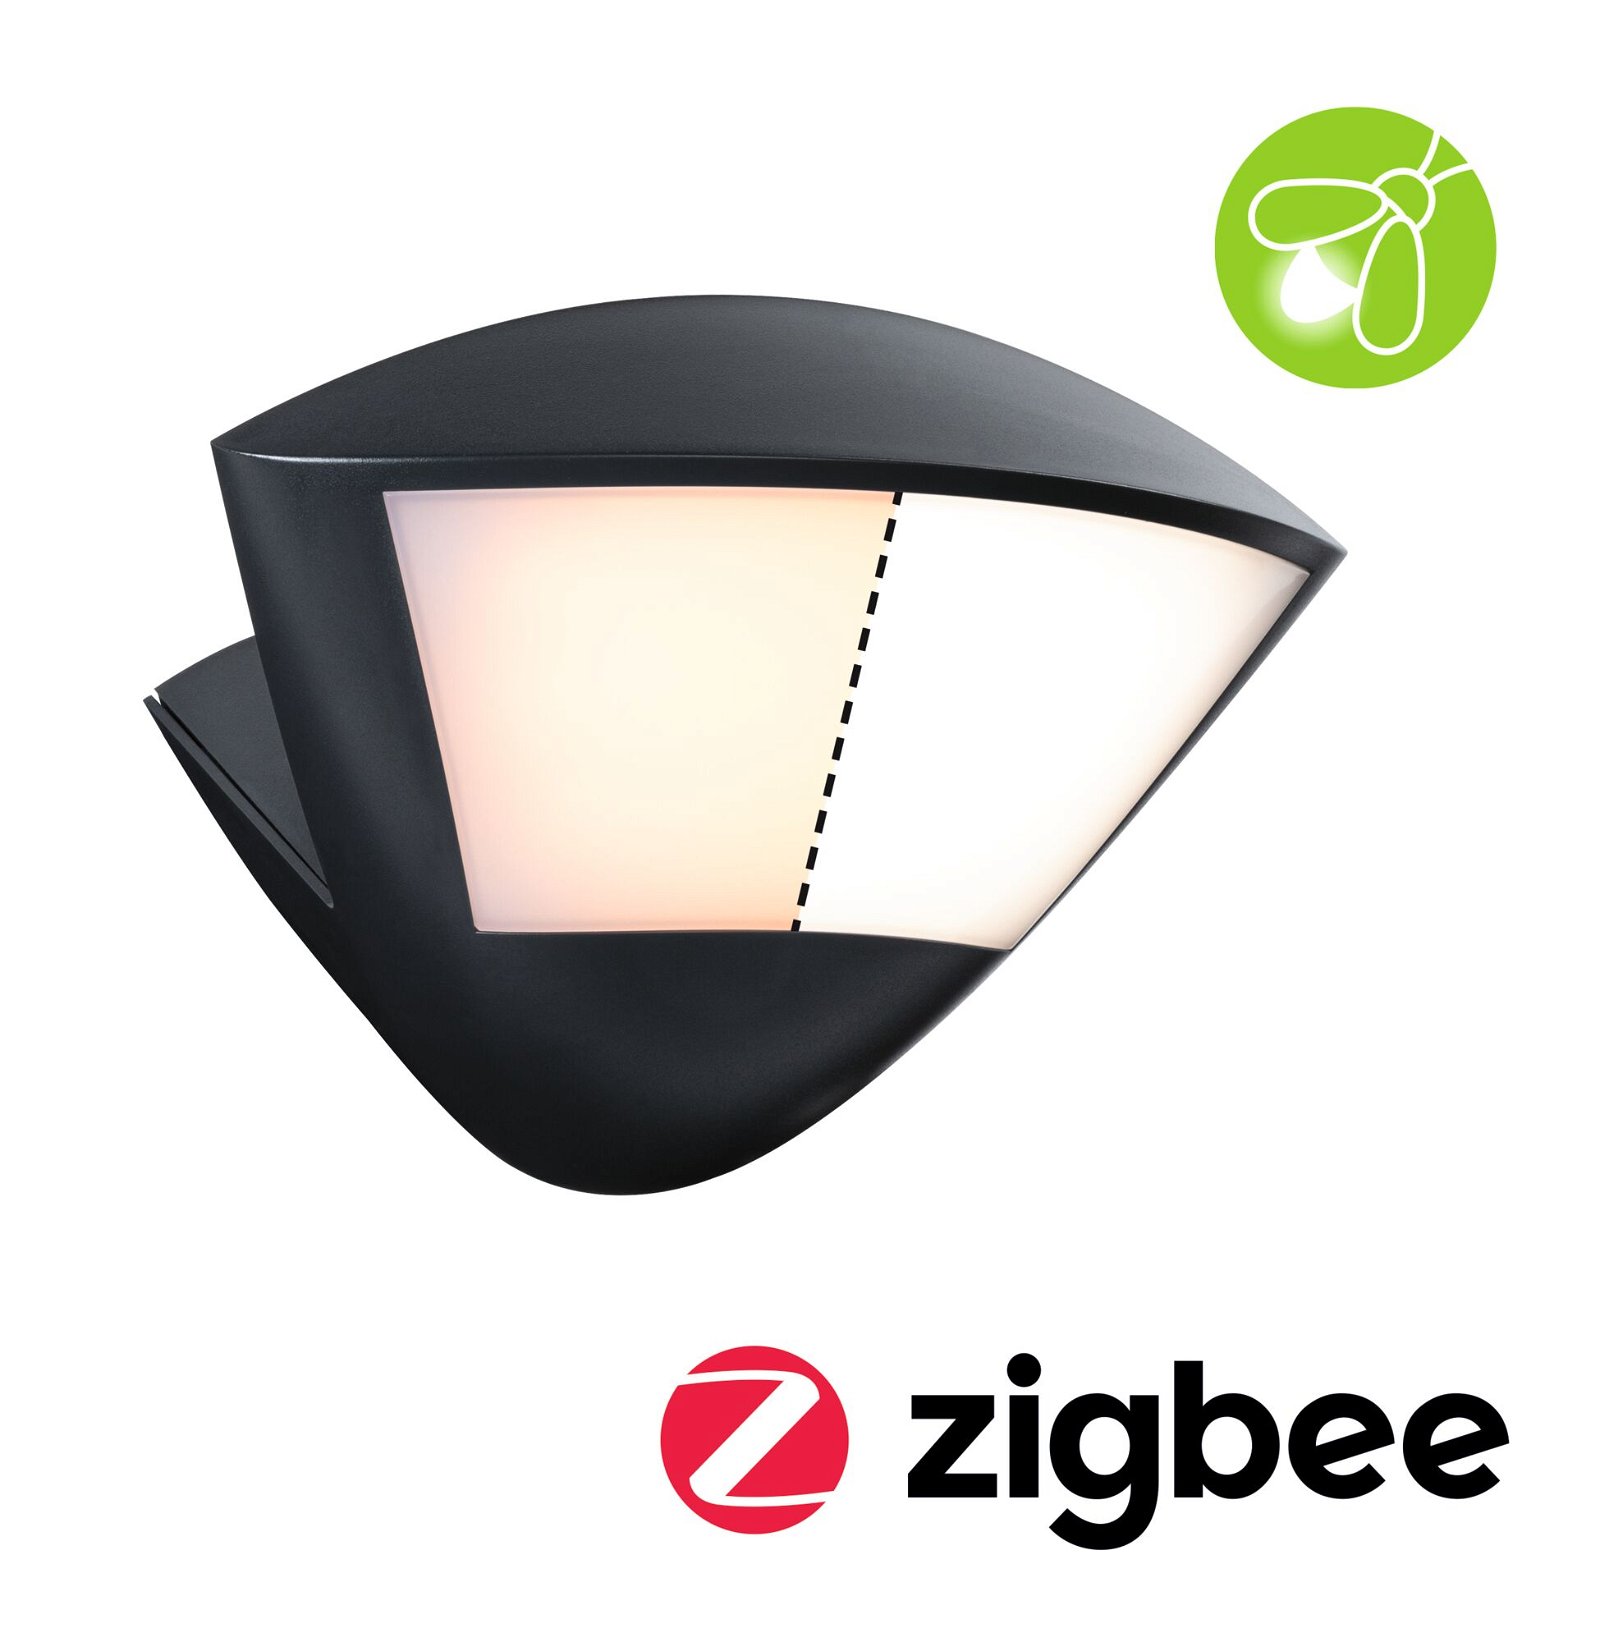 LED Außenwandleuchte Smart Home Zigbee 3.0 Skyla Bewegungsmelder insektenfreundlich IP44 226x164mm Tunable Warm 10W 840lm 230V Anthrazit Aluminium